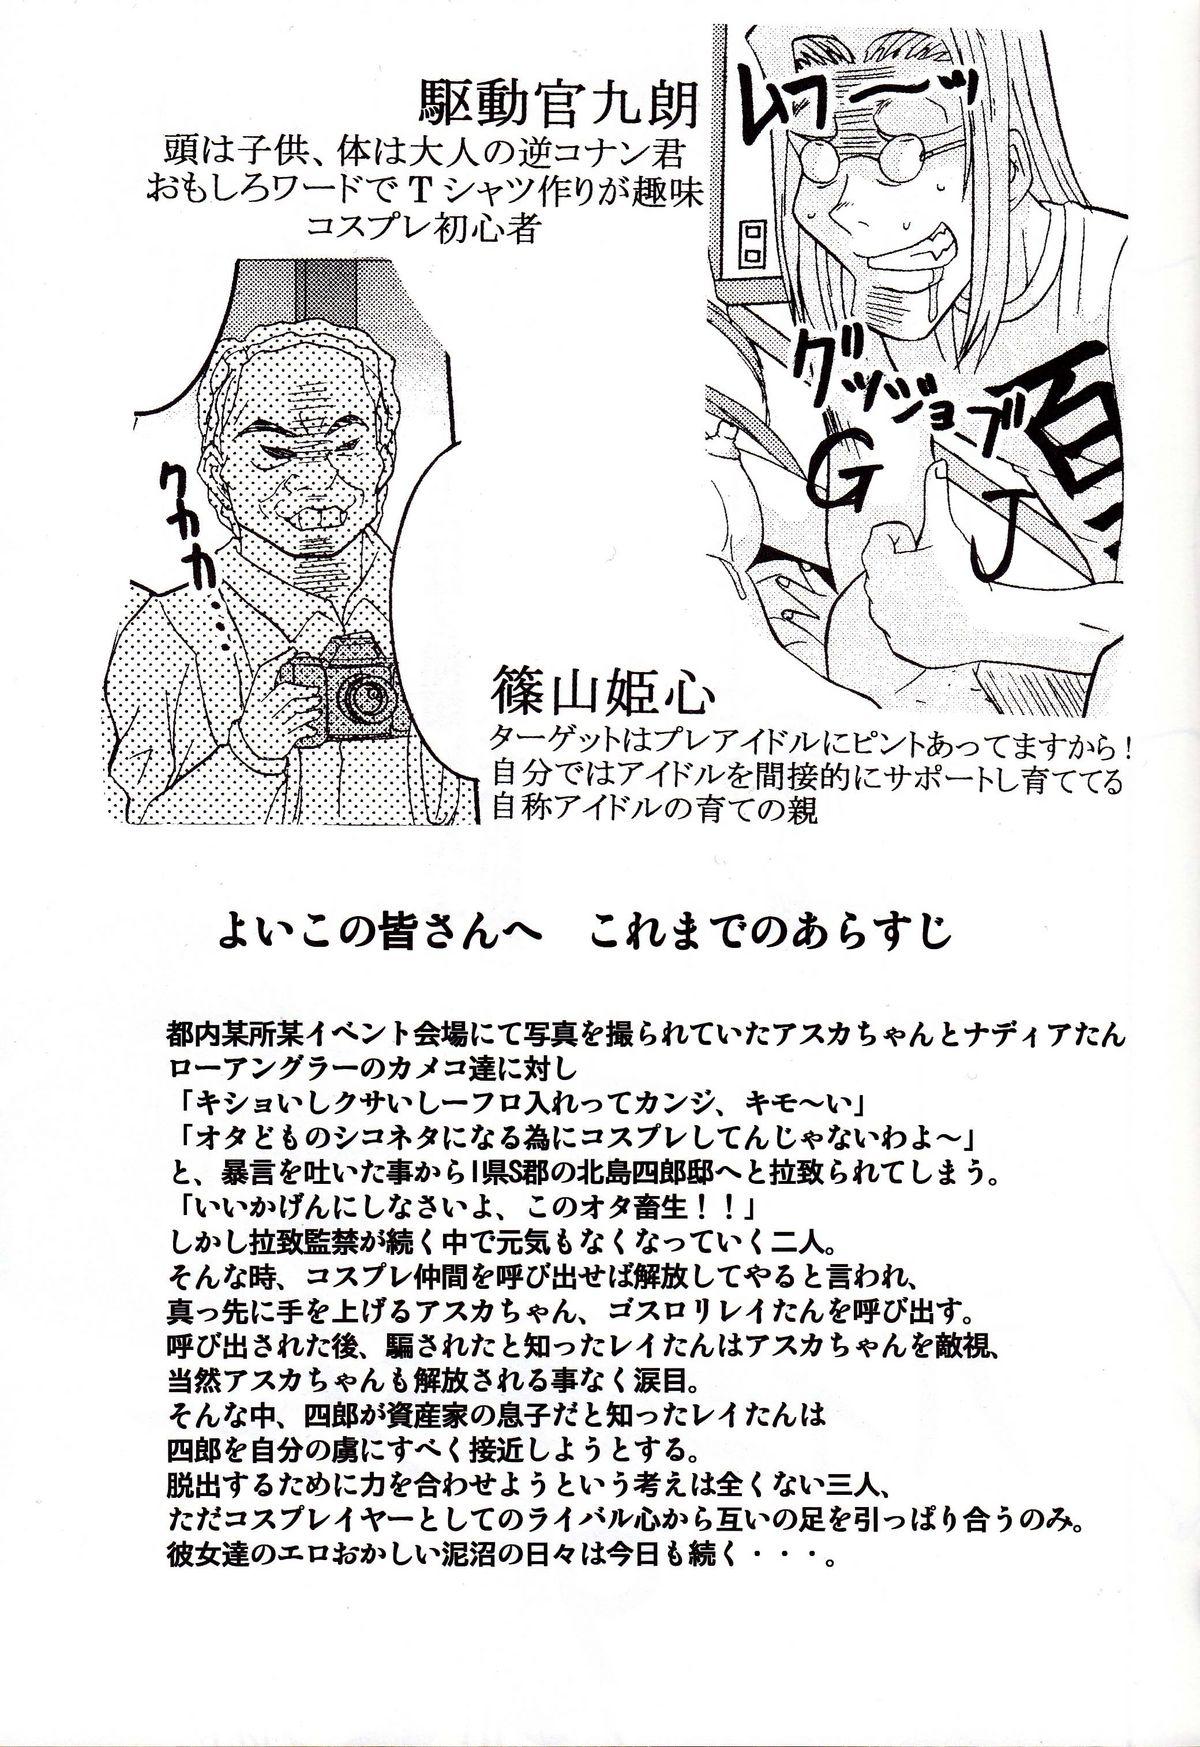 Asia Hi Energy 9 - Neon genesis evangelion Fushigi no umi no nadia Moaning - Page 6